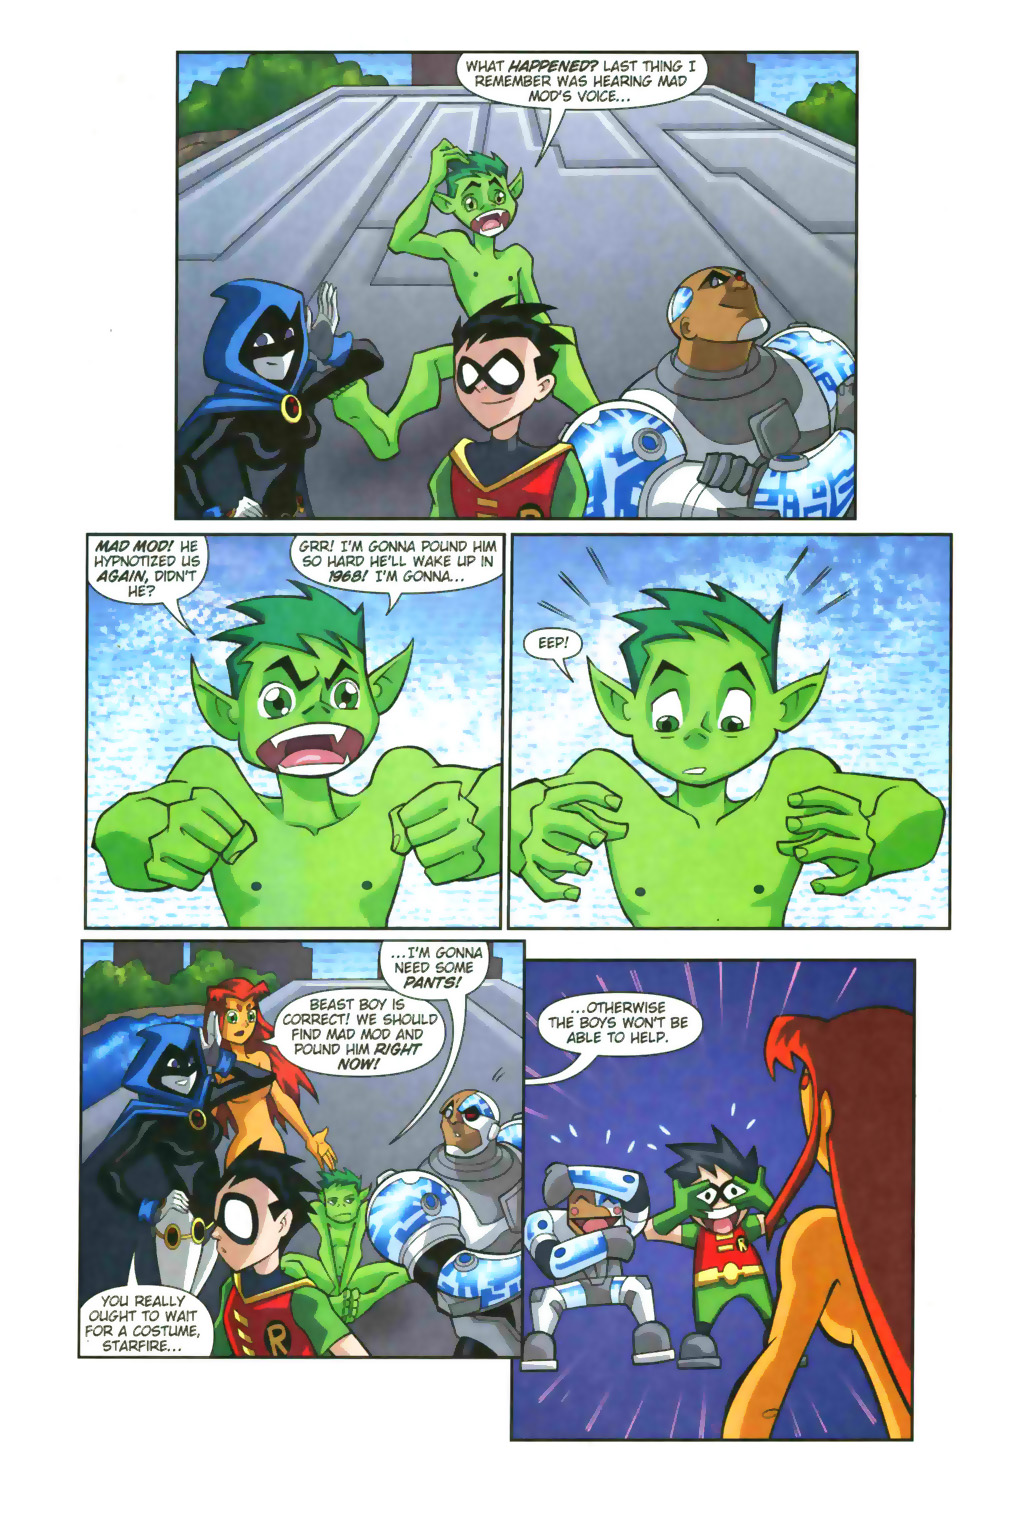 Teen Titans Go 2003 Issue 8 Read Teen Titans Go 2003 Issue 8 Comic